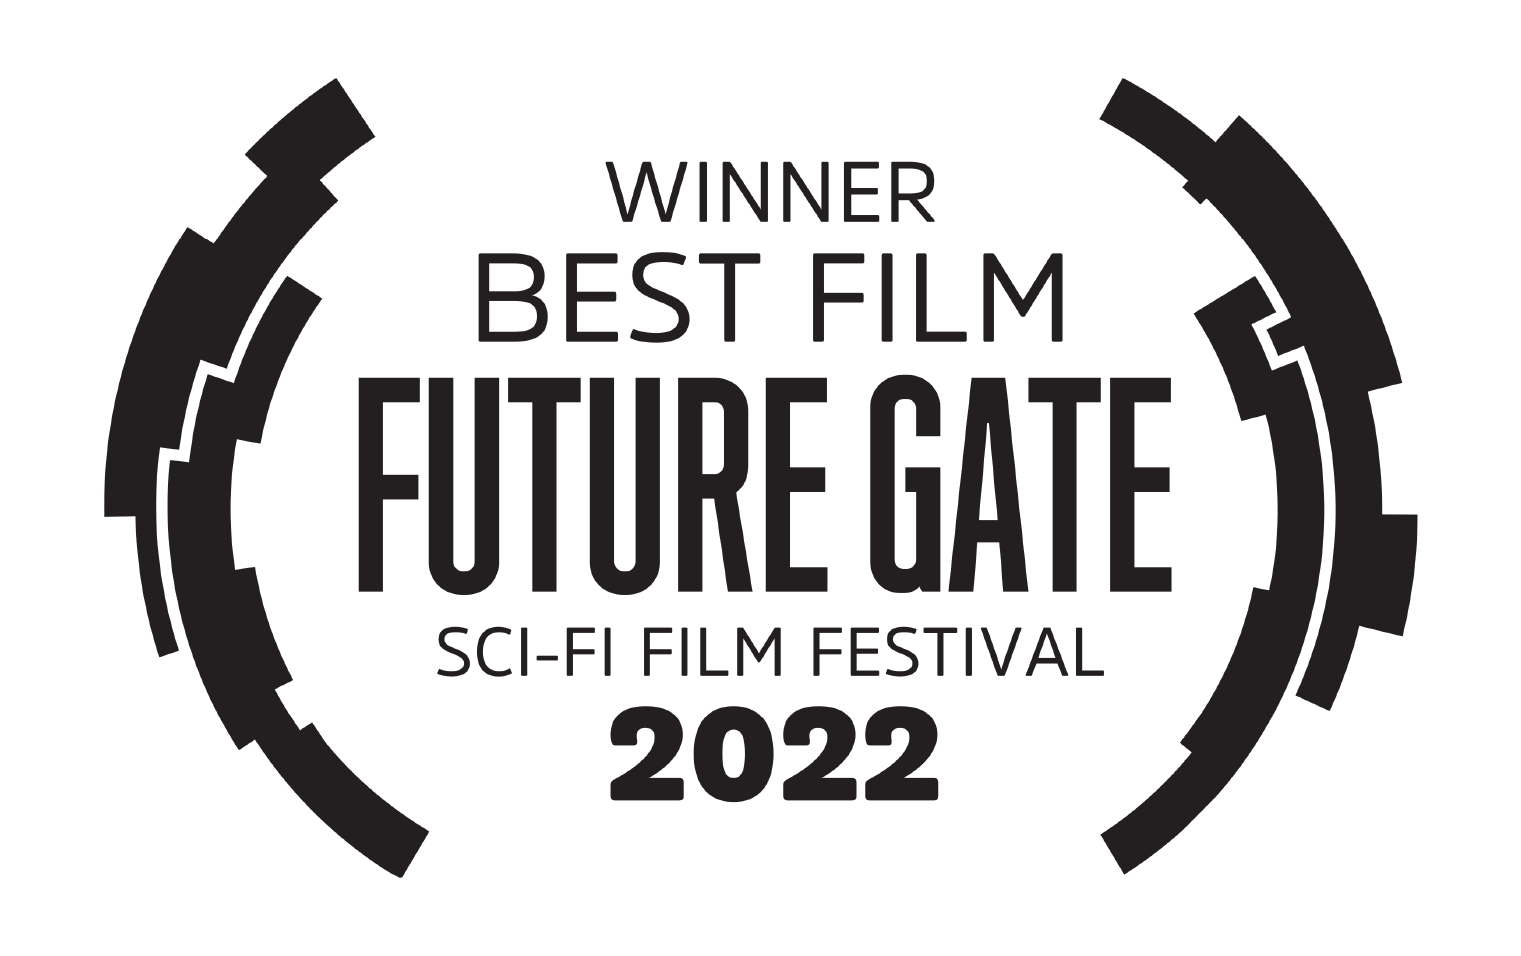 WINNER BEST FILM FUTURE GATE SCI-FI FILM FESTIVAL 2022